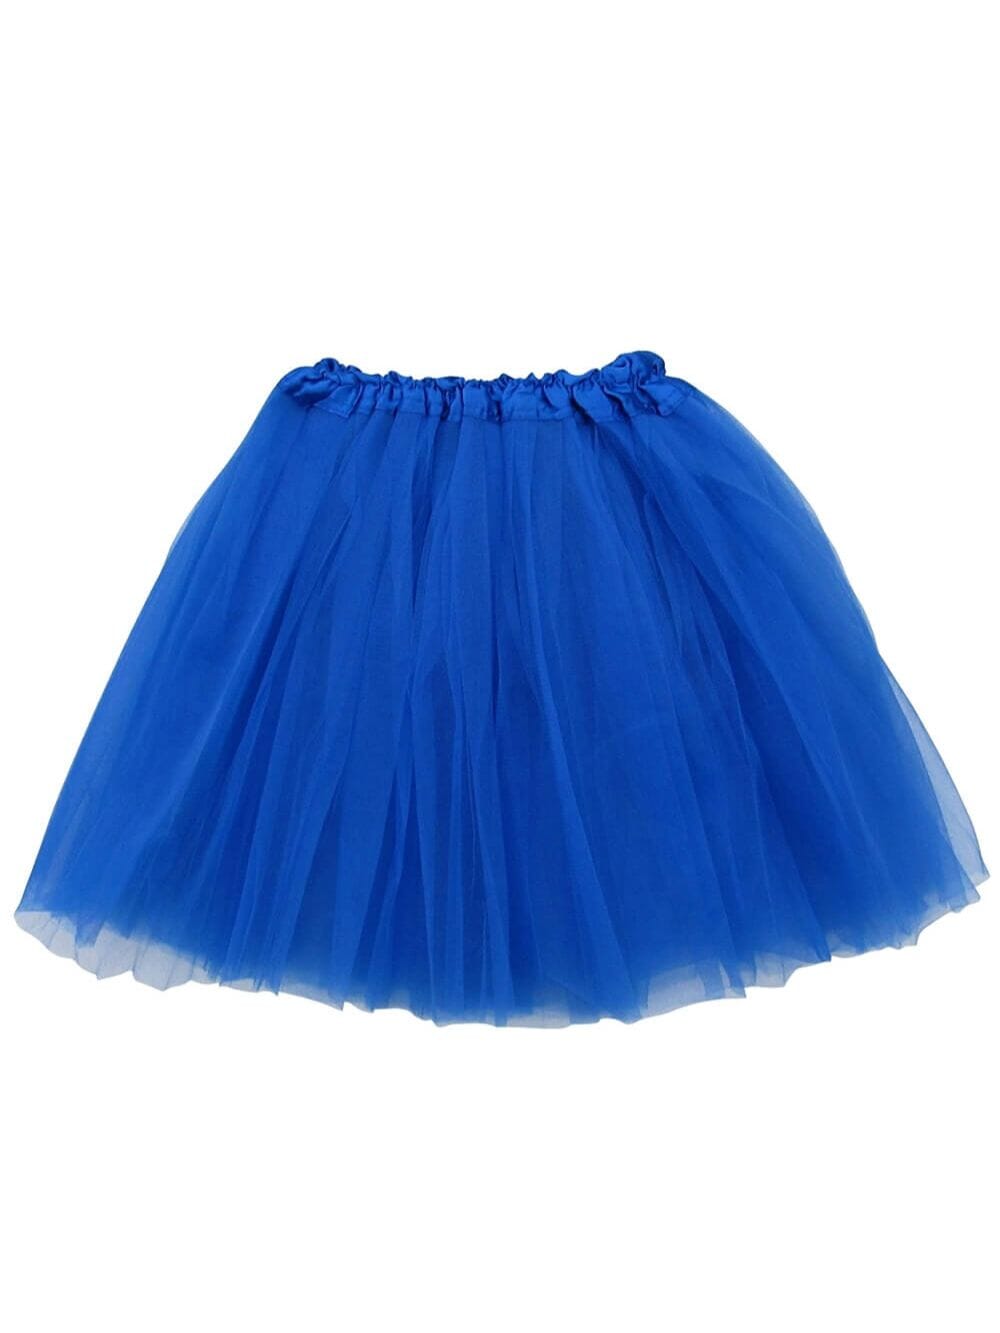 Royal Blue Tutu Skirt for Adult - Women's Size 3-Layer Basic Ballet Costume Dance Tutus - Sydney So Sweet